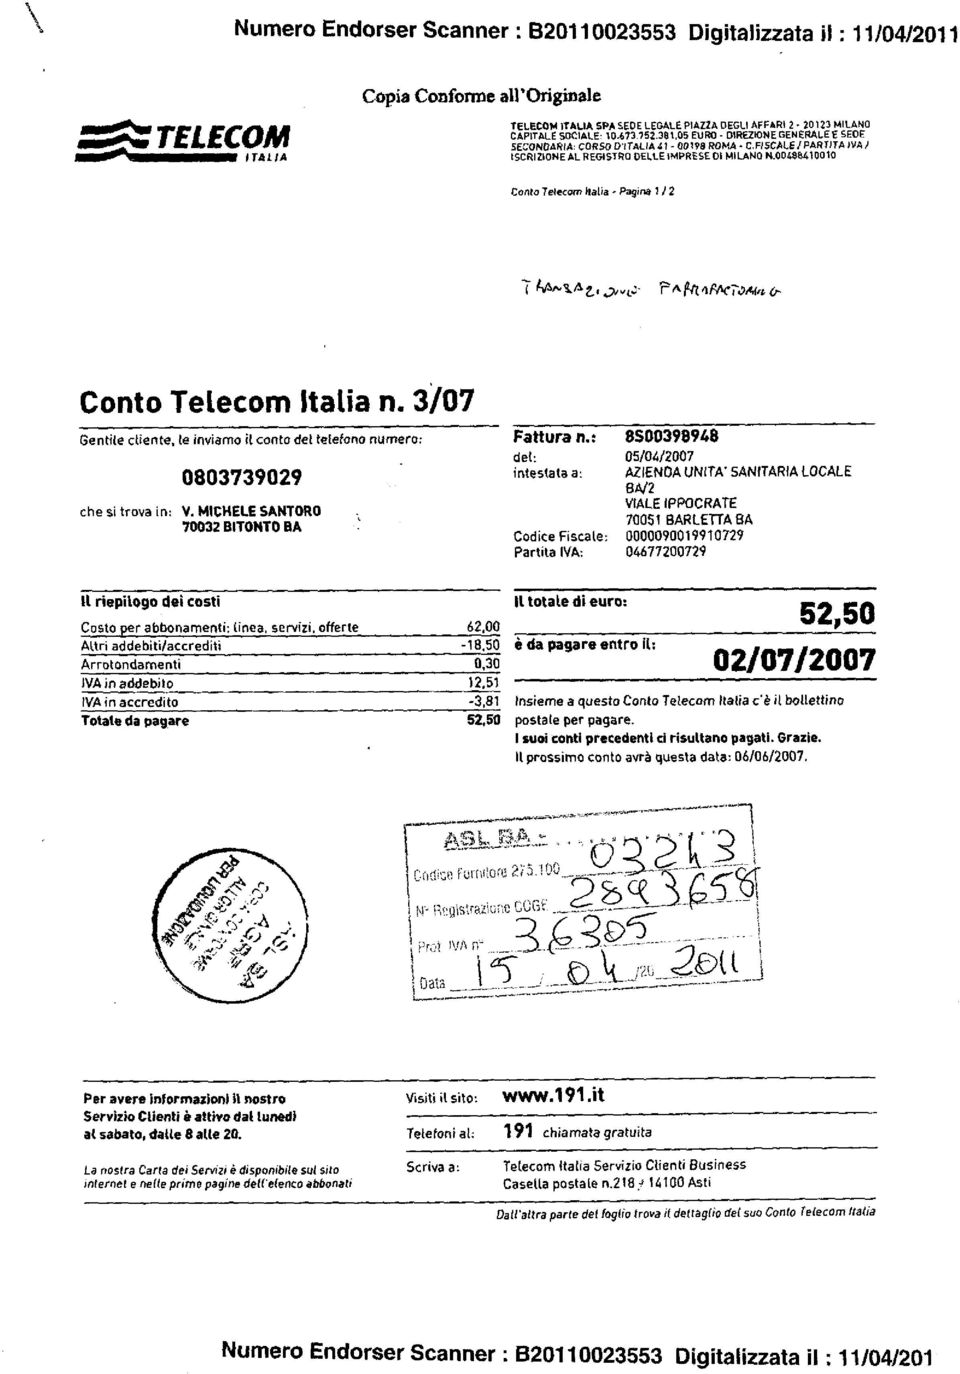 F/ SCALE / PARTITA /VA ISCRIZIONE AL REGISTRO DELLE IMPRESE DI MILANO N.00488410010 Canta Telecom balia - Pagina 1 i 2 11110-5.42,, ex 91( 6PAc71met Conto Telecom Italia n.